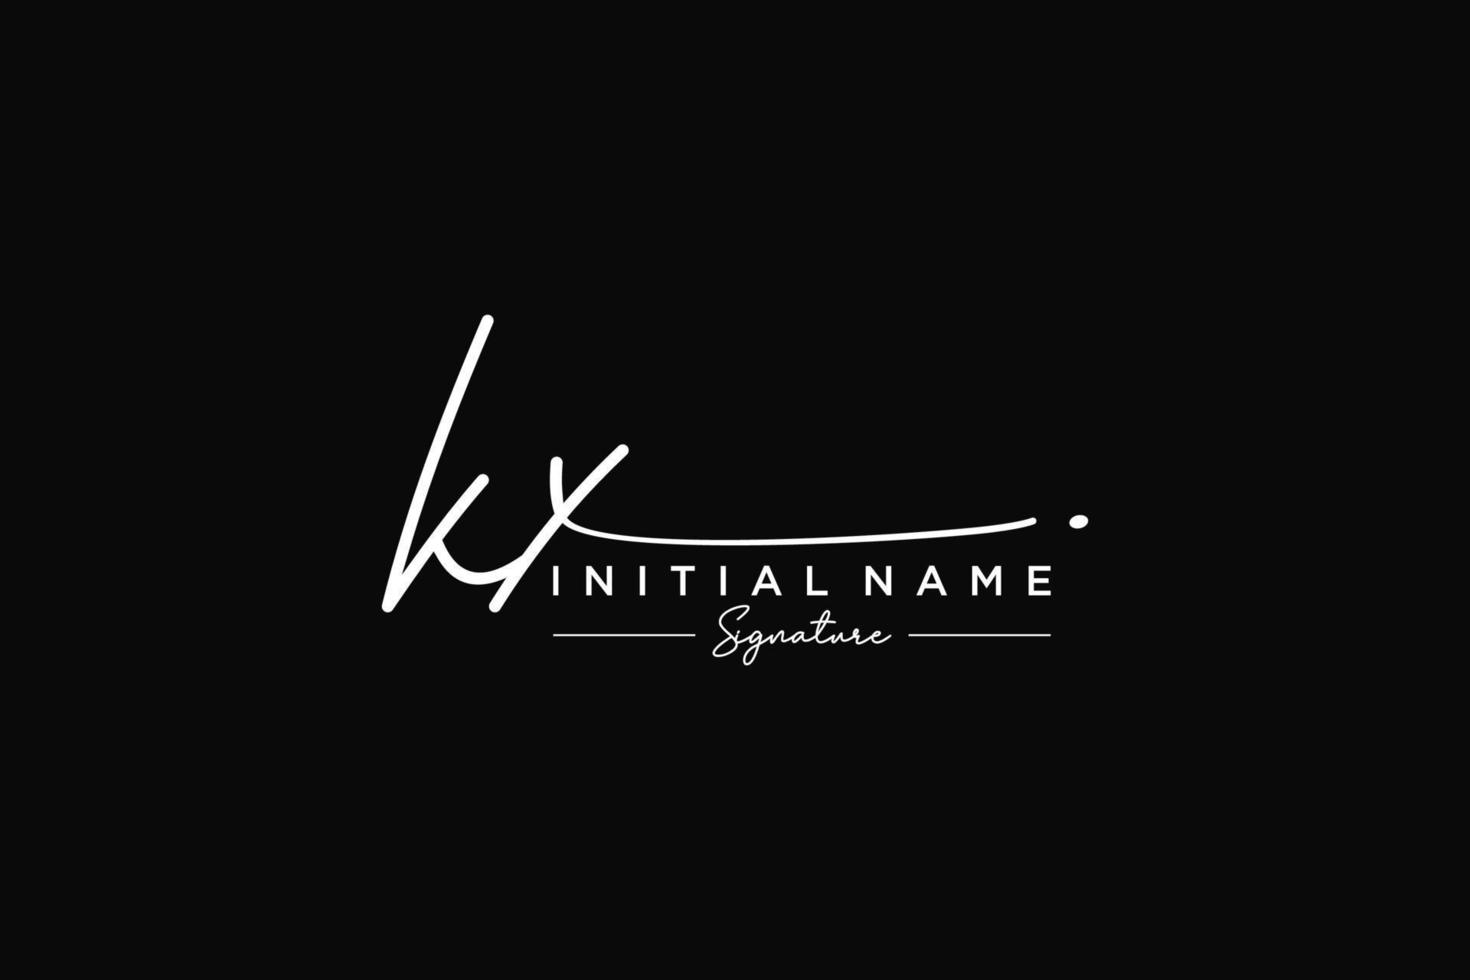 vector de plantilla de logotipo de firma kx inicial. ilustración de vector de letras de caligrafía dibujada a mano.